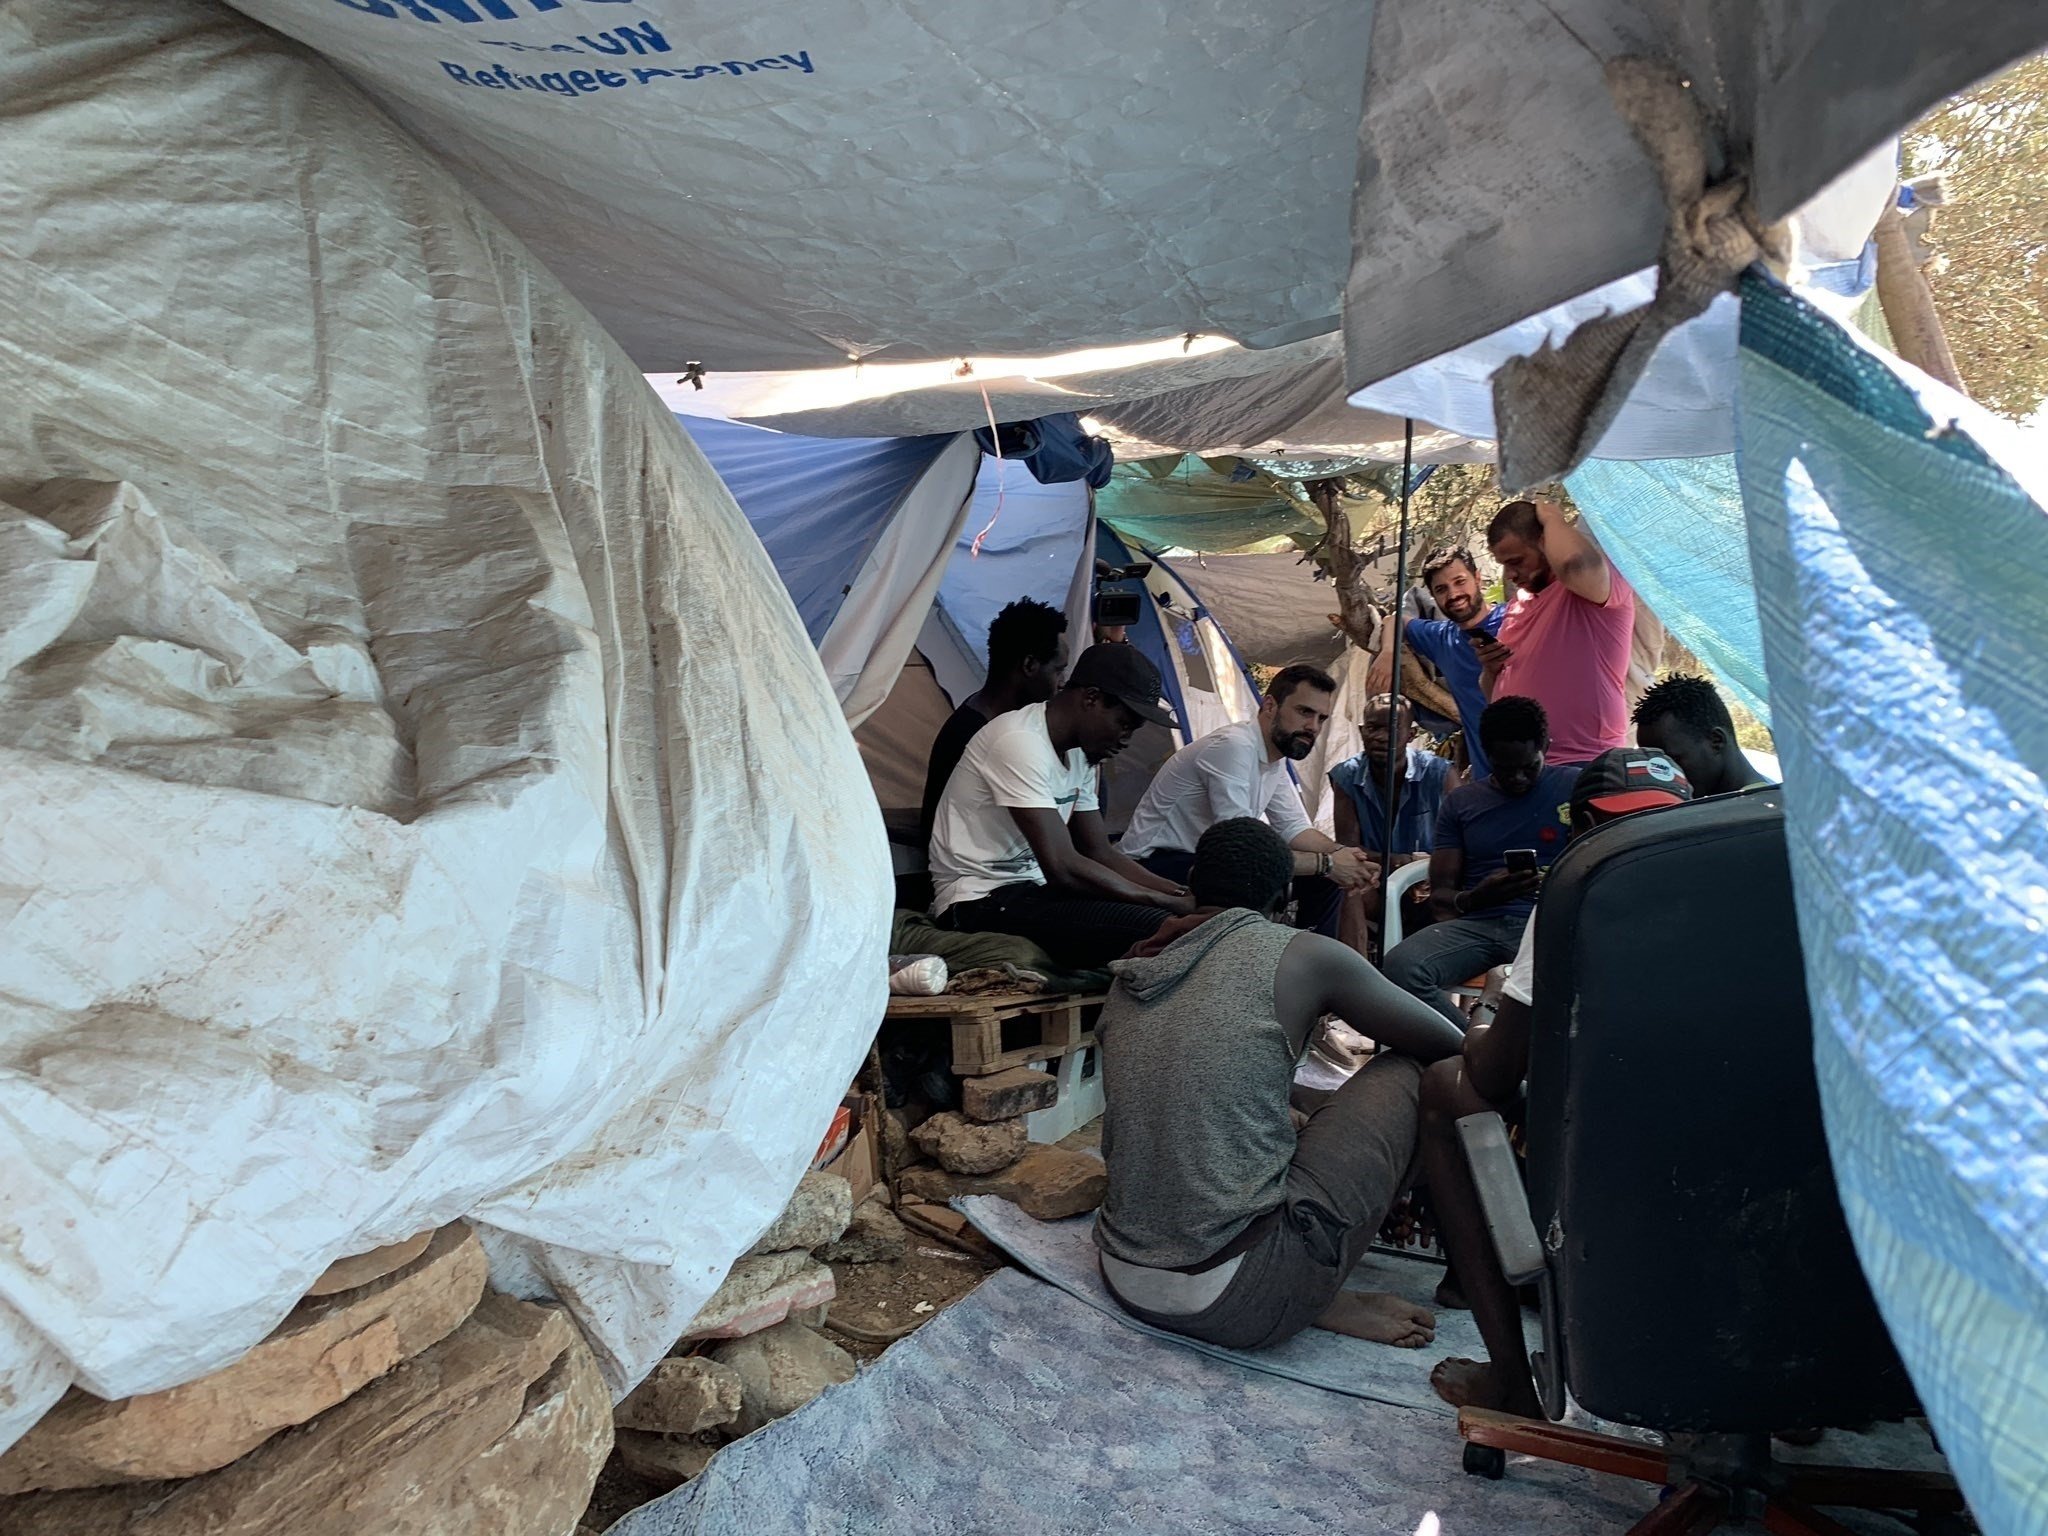 Torrent visita camps de refugiats a Grècia i es reuneix amb entitats humanitàries